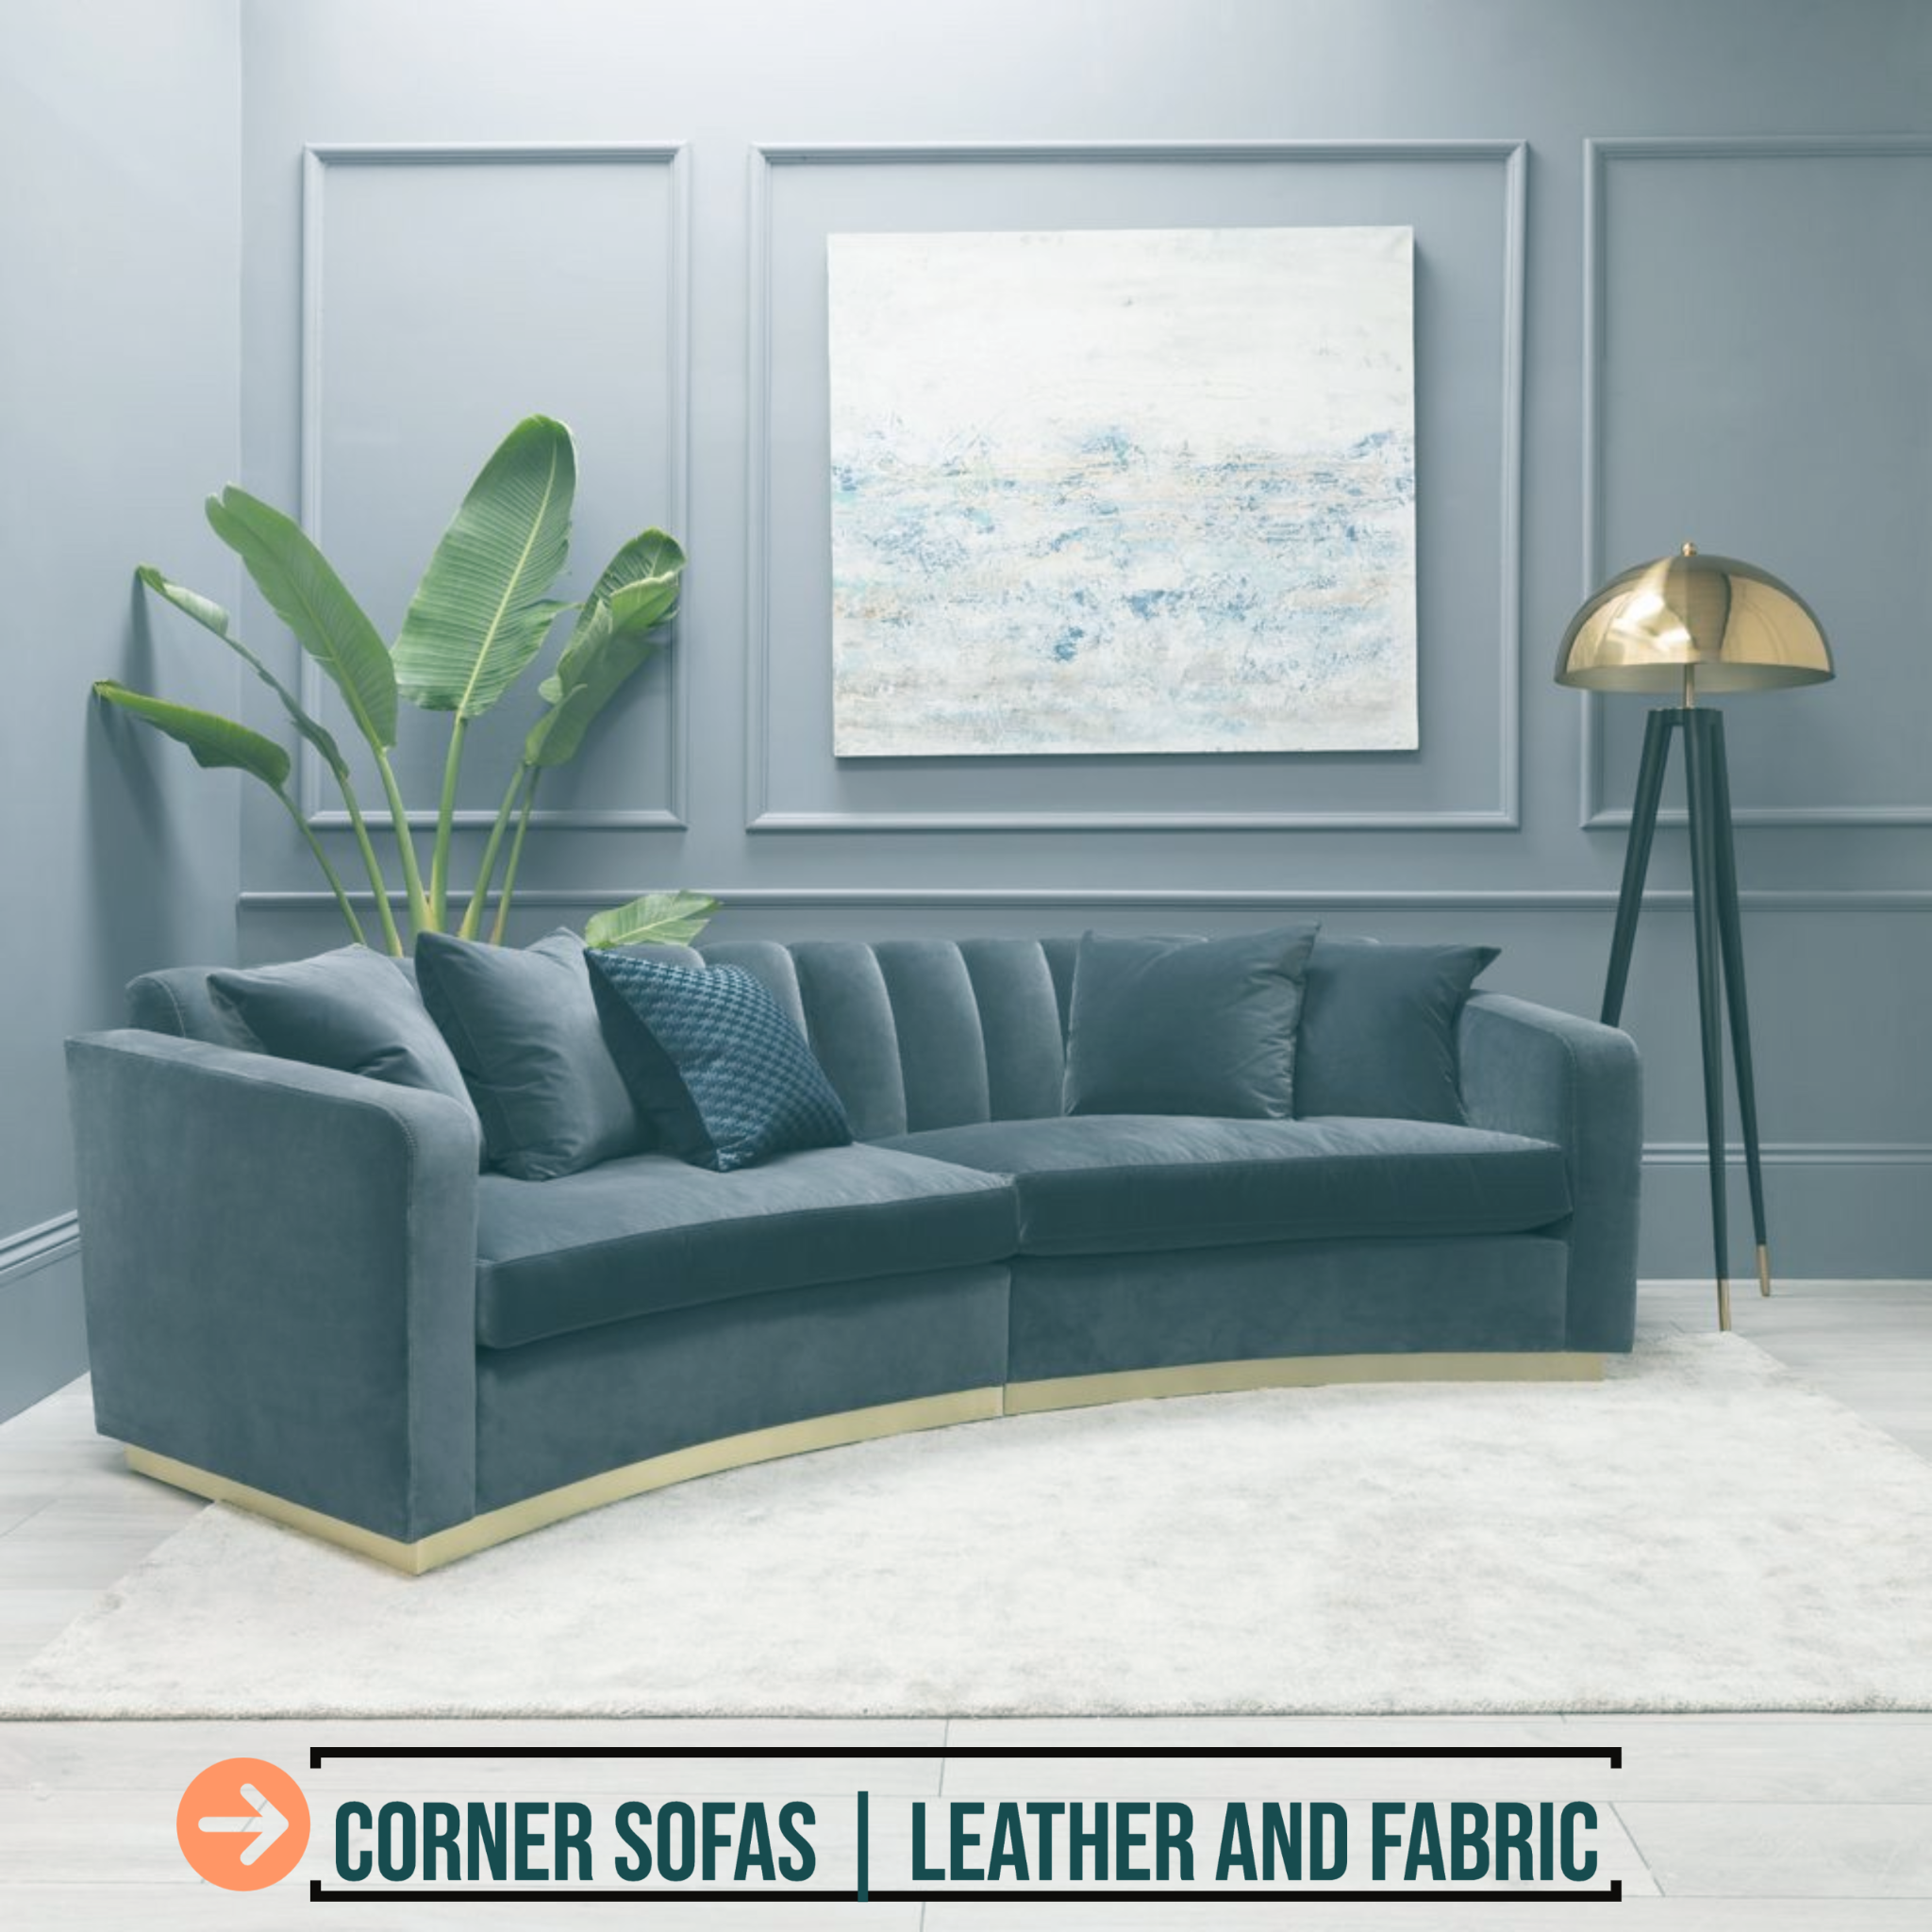 get_the_best_Corner Sofa_ad